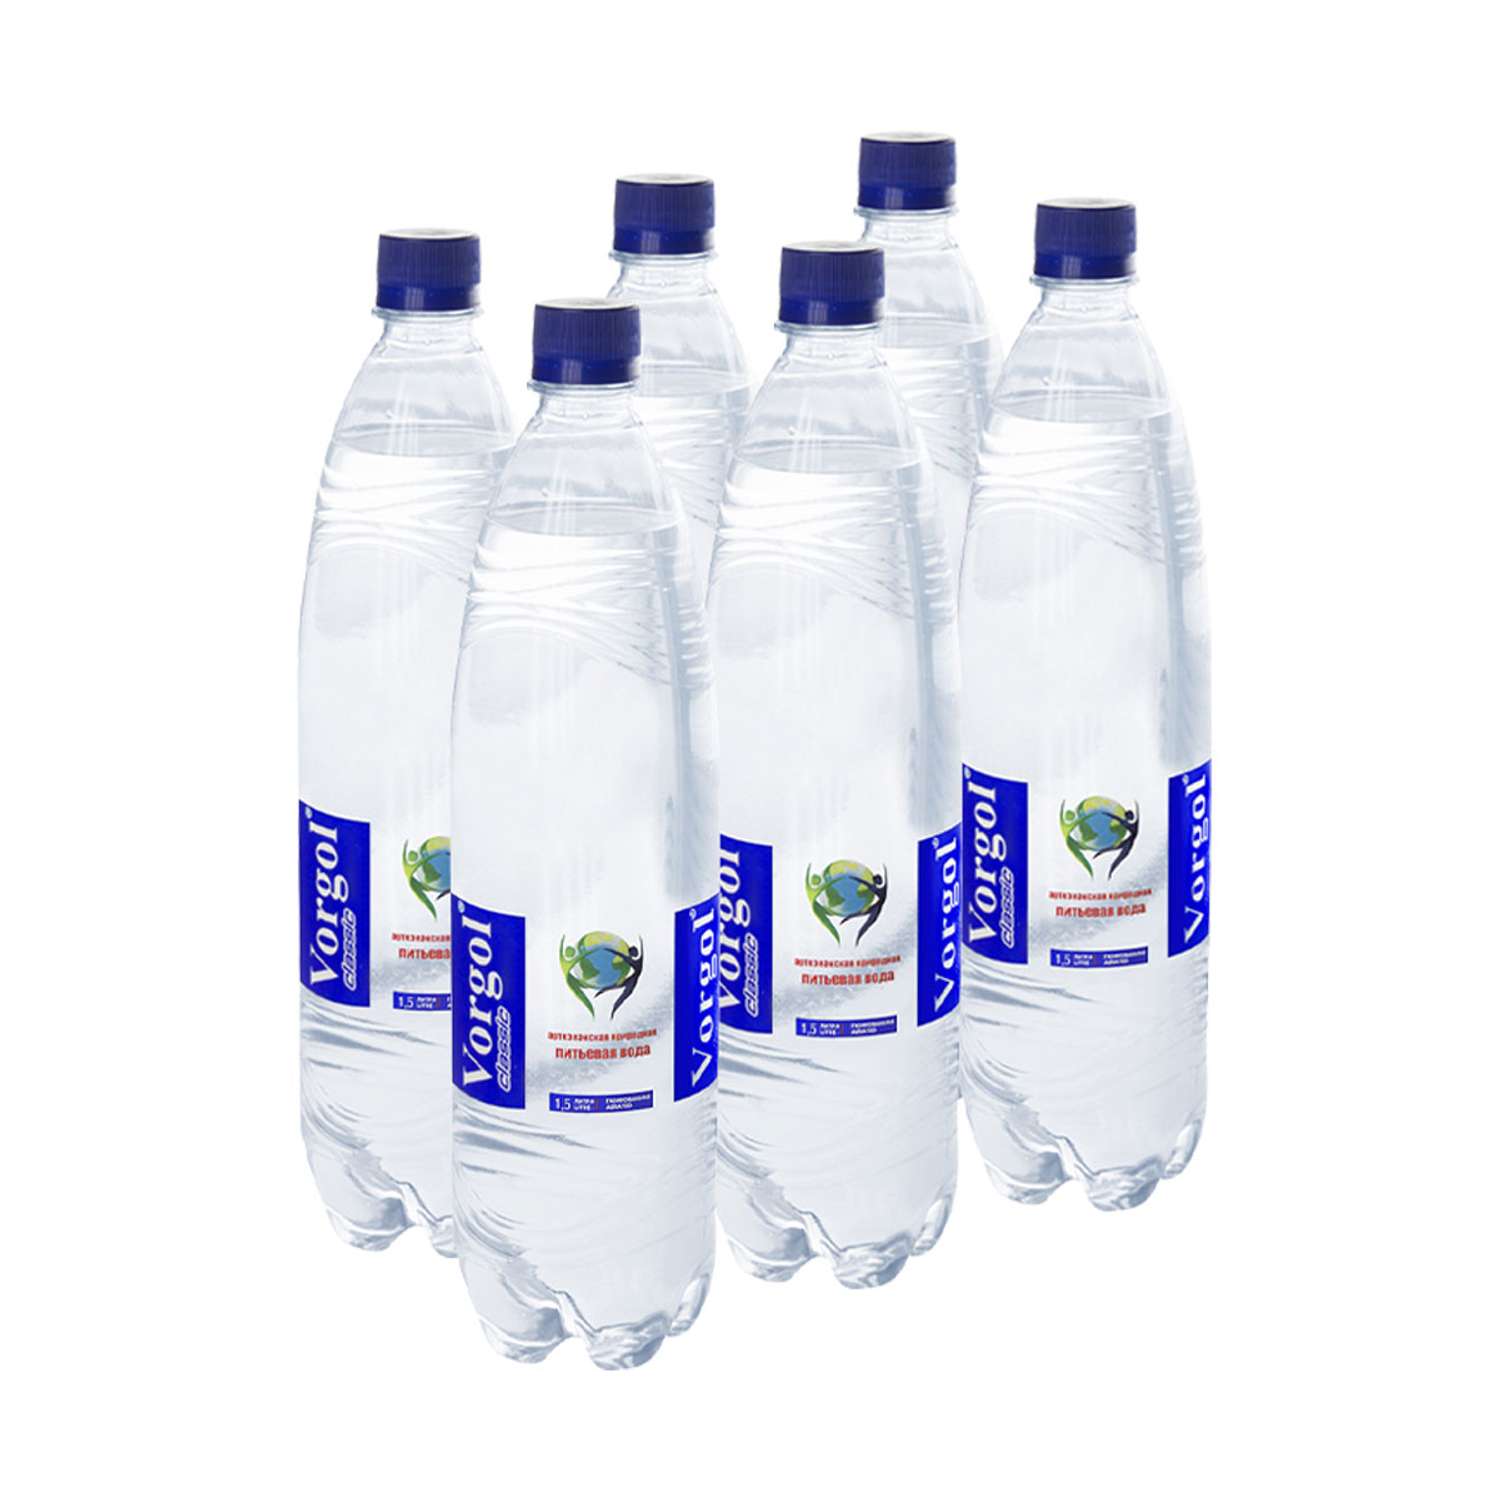 Вода питьевая Vorgol природная артезианская газированная 6 шт по 1.5 л - фото 1